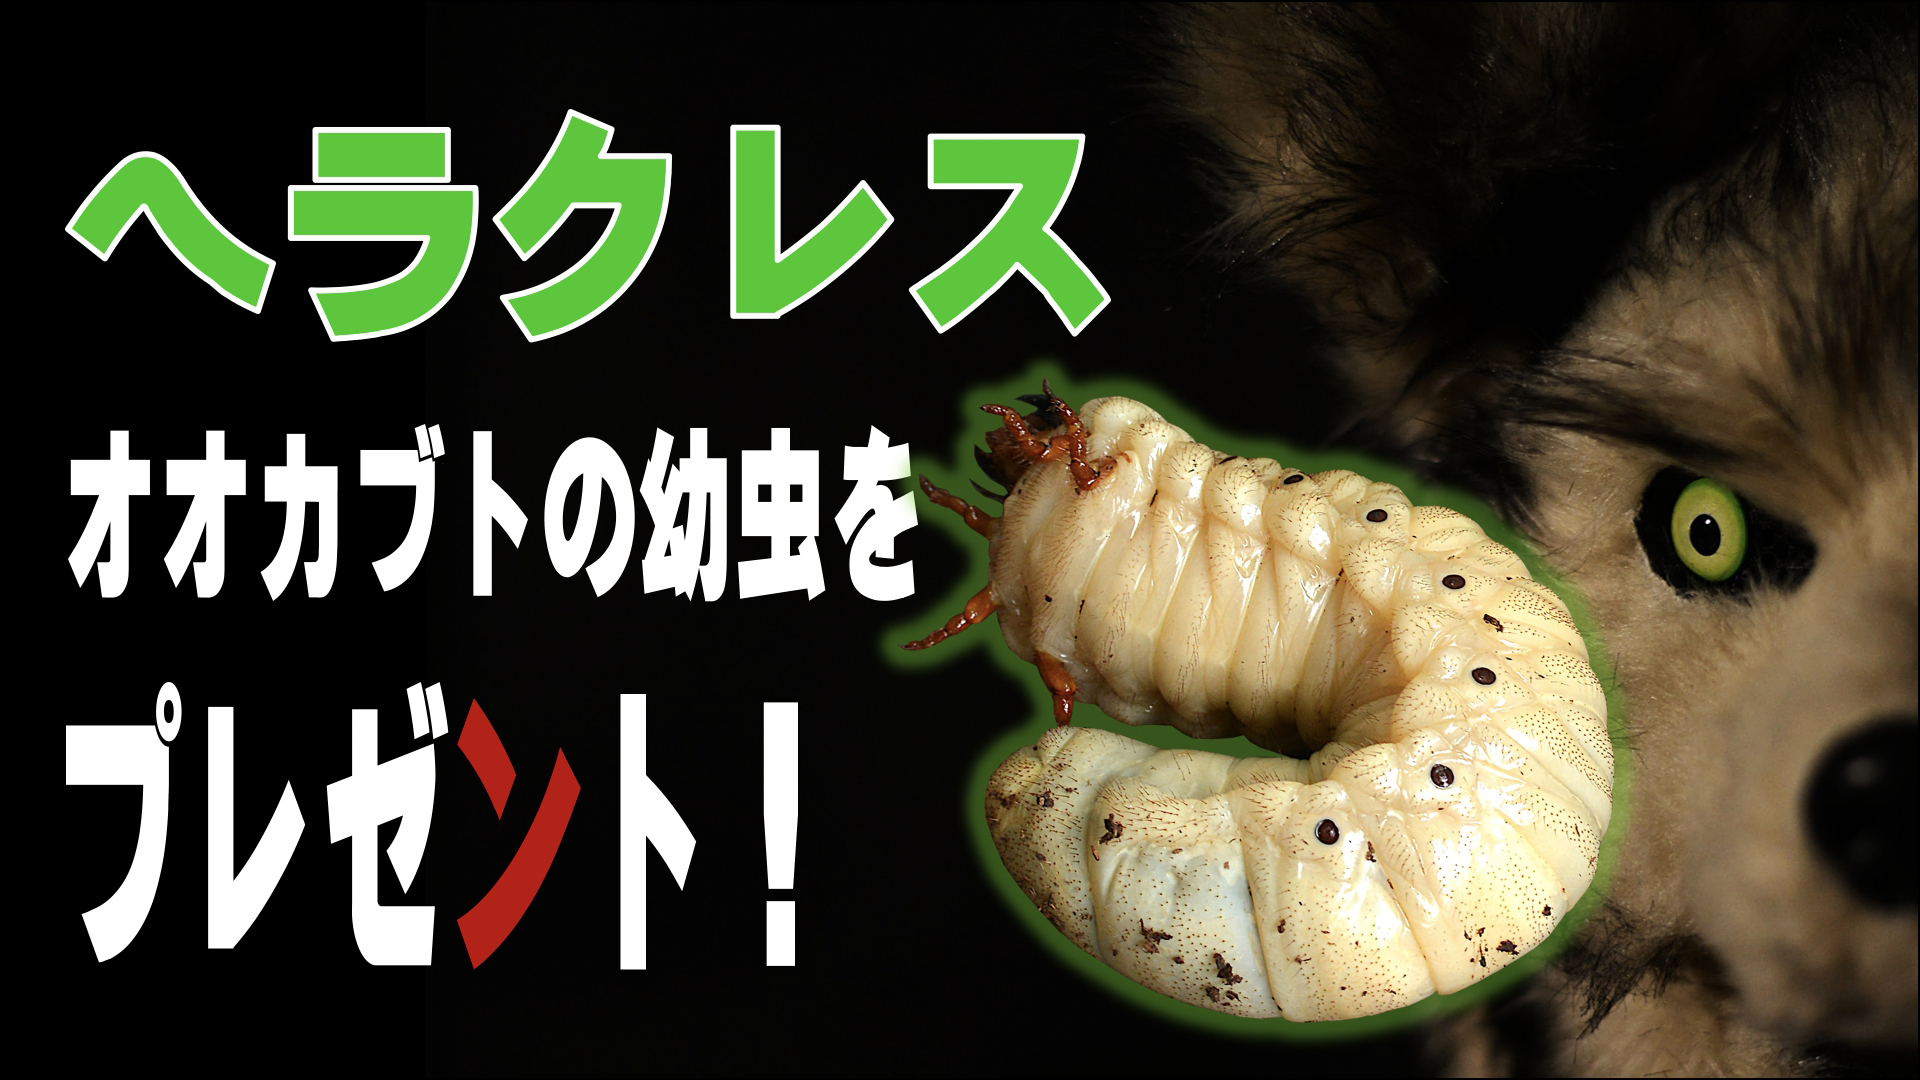 日本オオカミカミ ヘラクレスオオカブトの幼虫をプレゼントしてみた 遊びの社